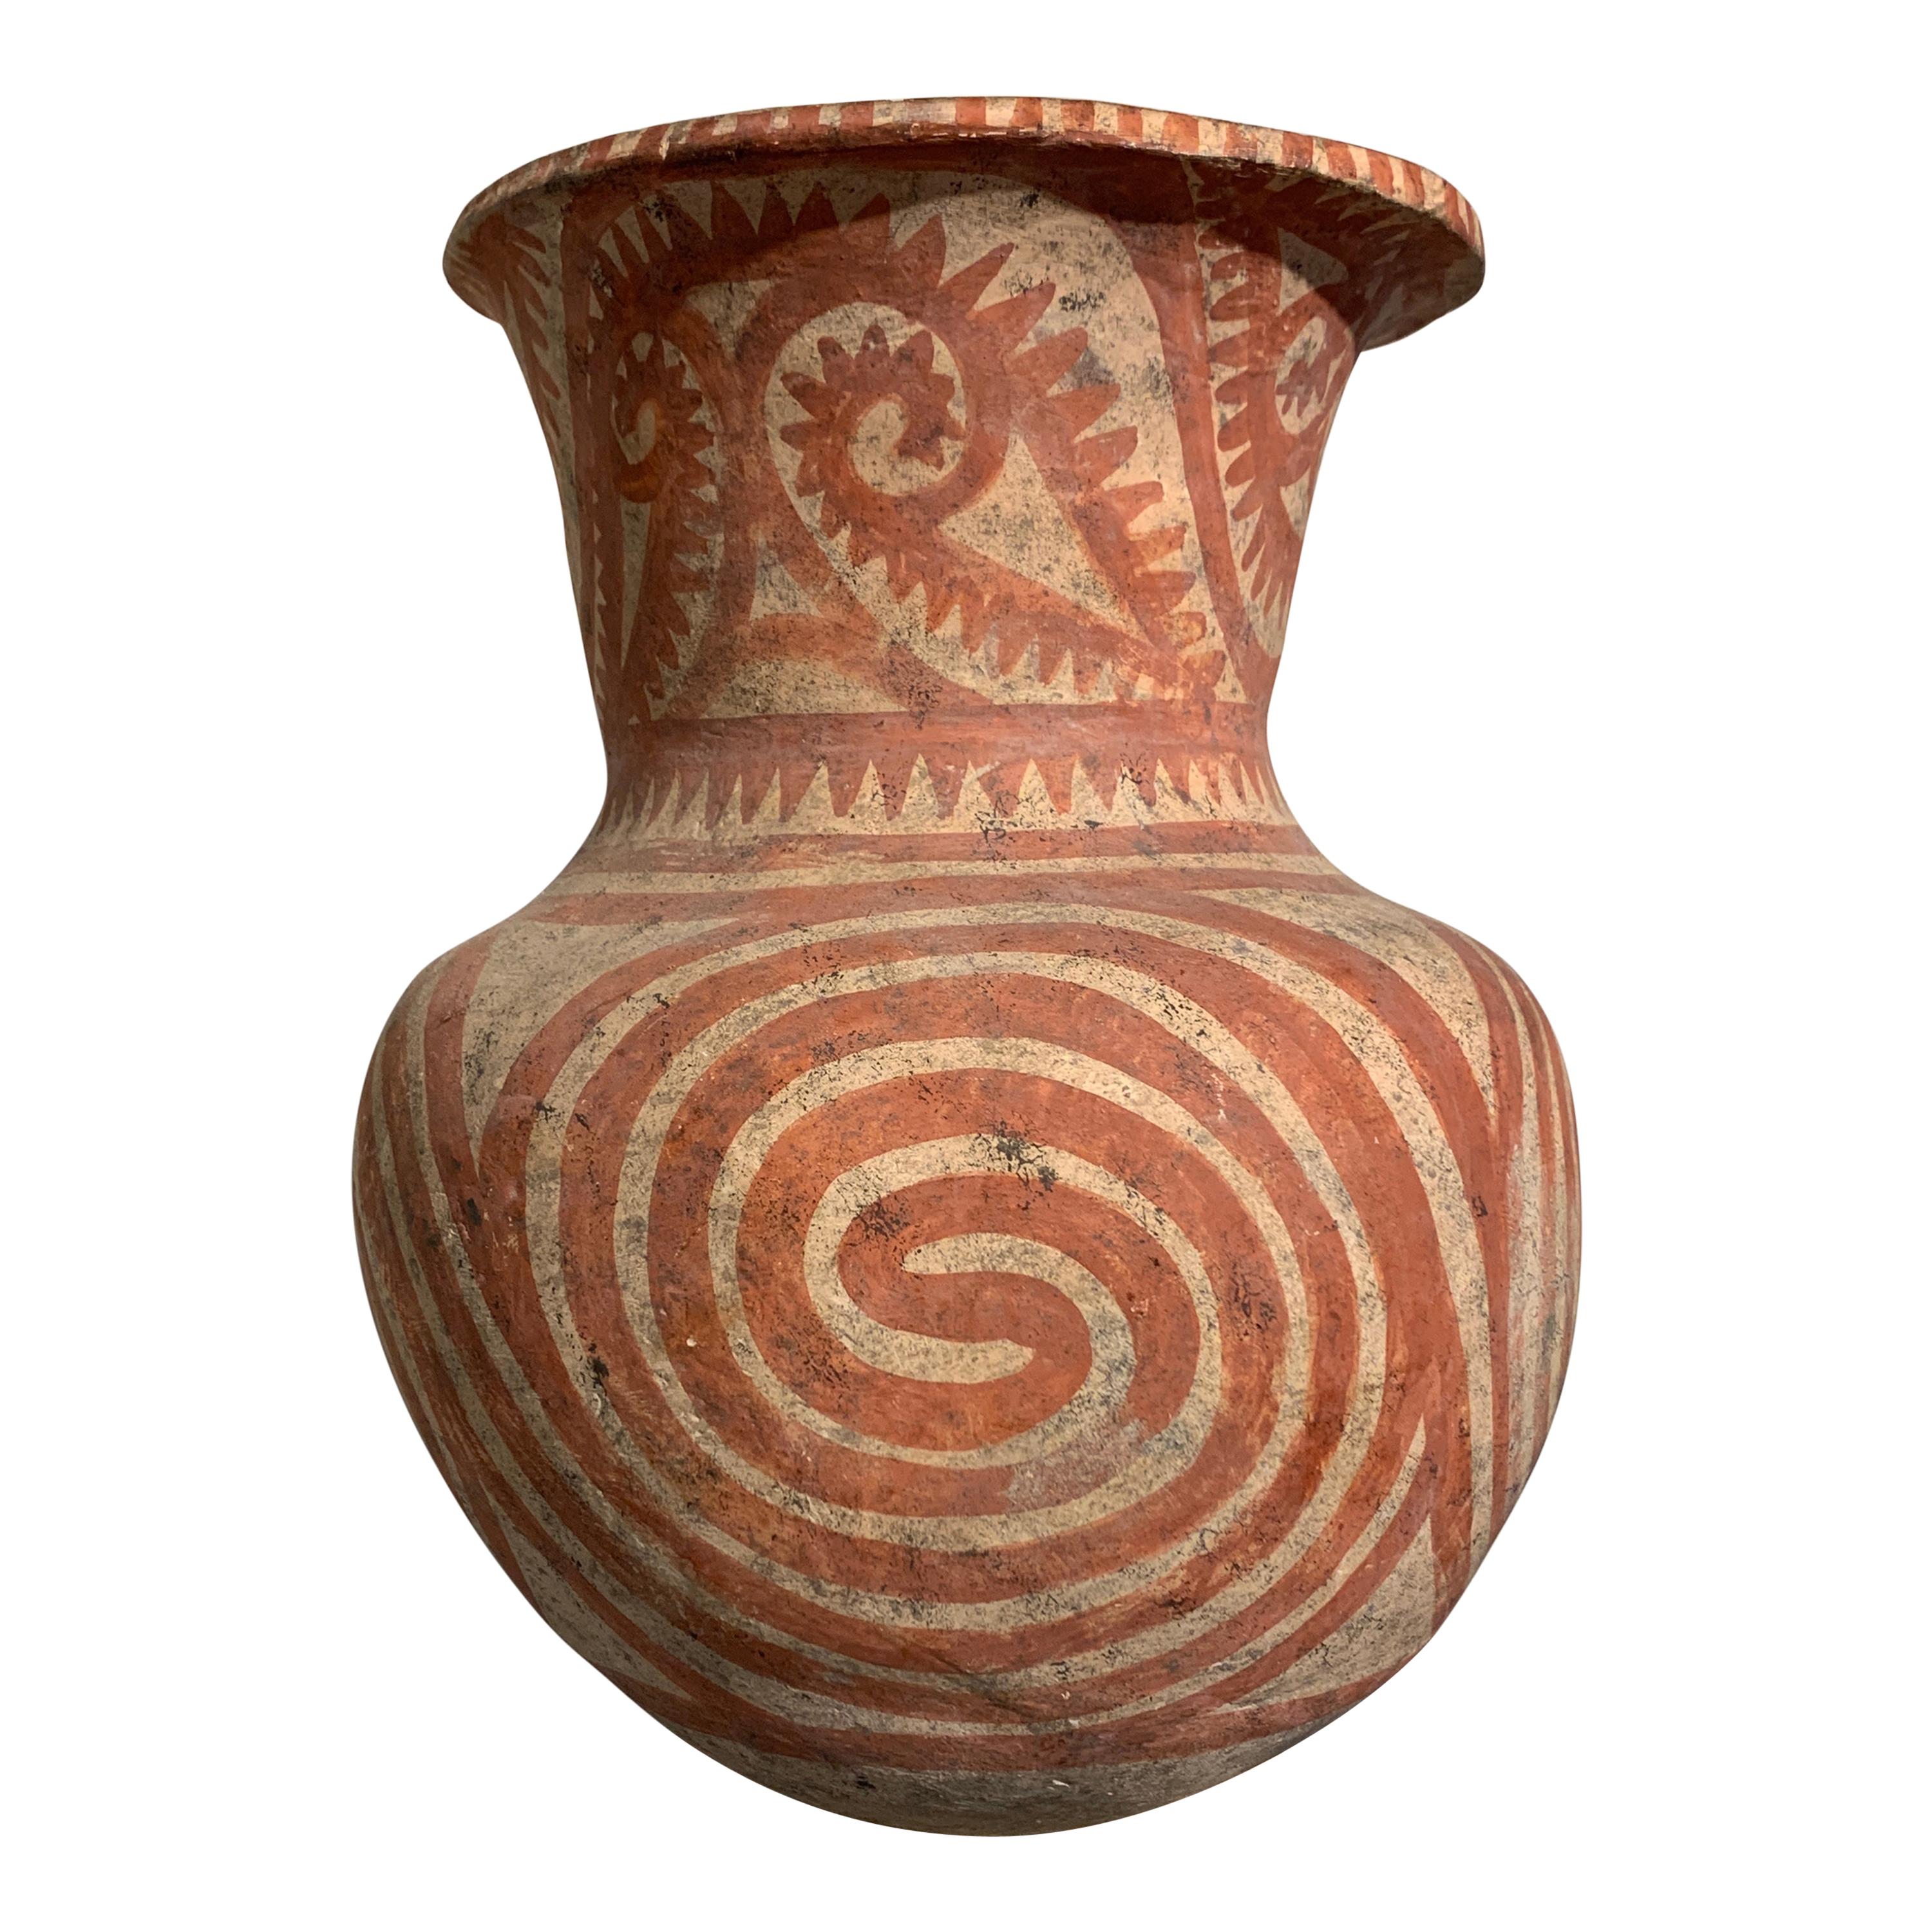 Grand vase en poterie thaïlandaise peinte Ban Chiang, fin de la période, vers 300 avant J.-C. en vente